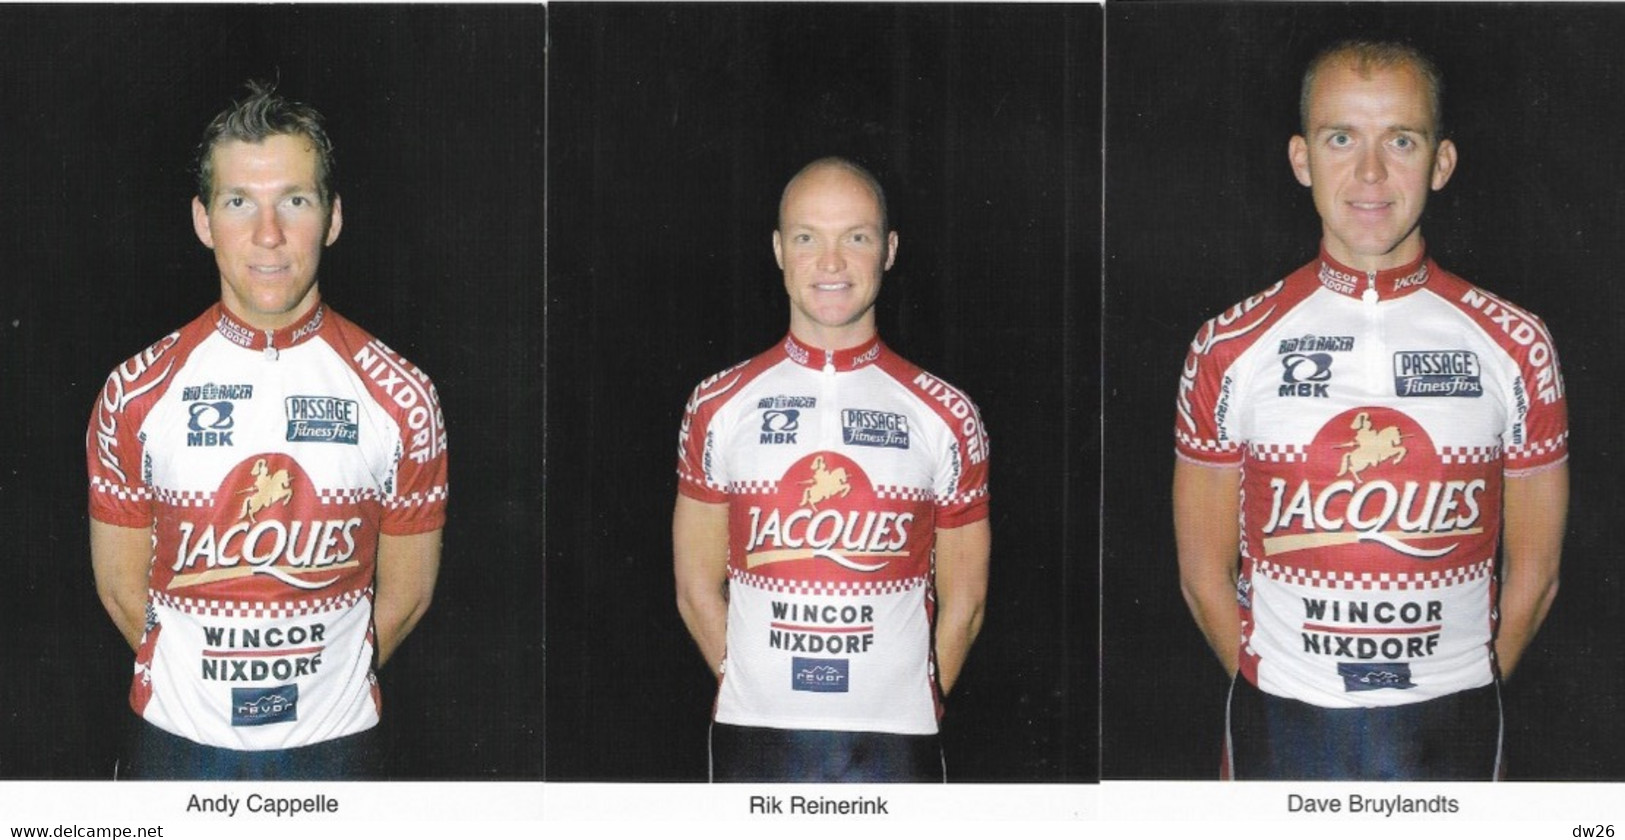 Fiche Sports: Cyclisme, Equipe professionnelle Chocolade Jacques-Wincor (Belgique) Année 2002 - 24 fiches avec Publicité